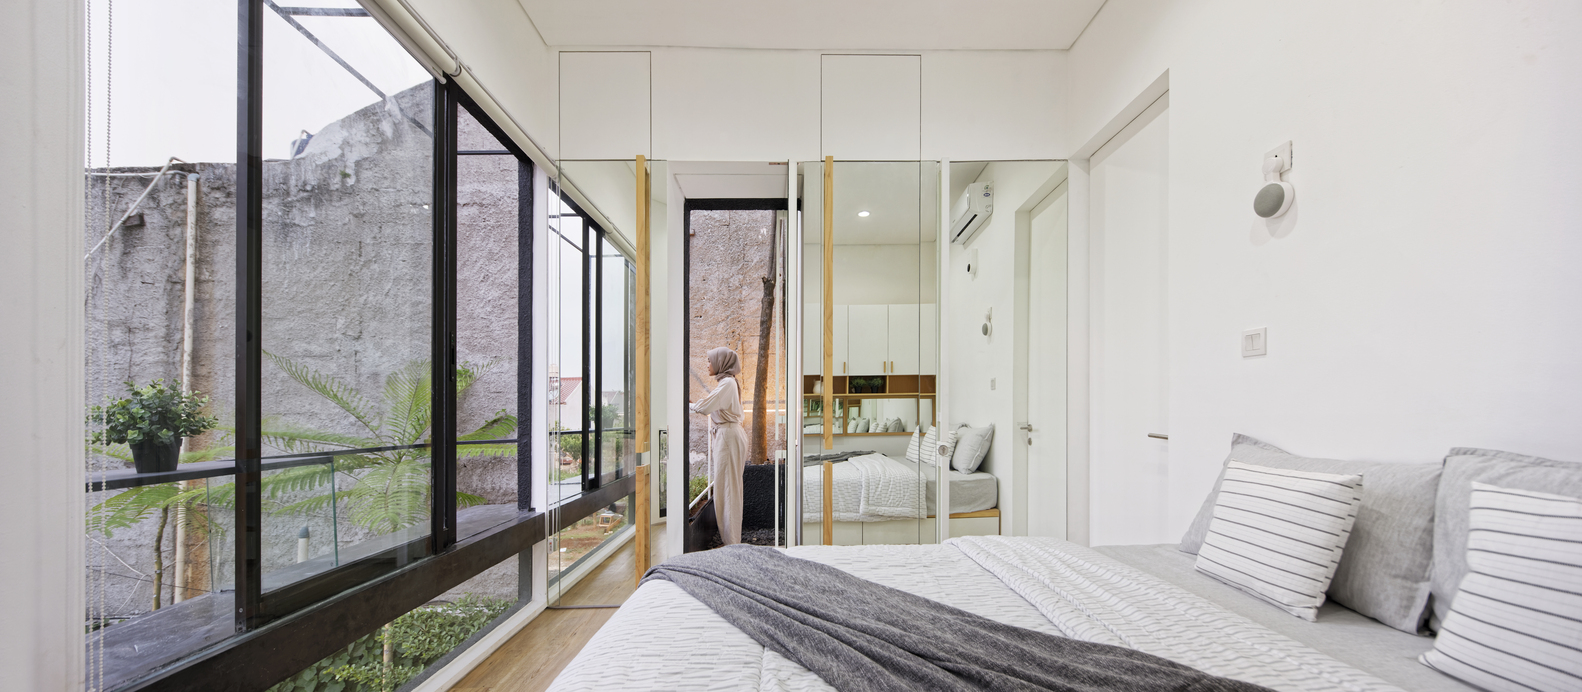 hình ảnh toàn cảnh phòng ngủ trên tầng 2 ngôi nhà với tường sơn trắng, gương soi, tường kính